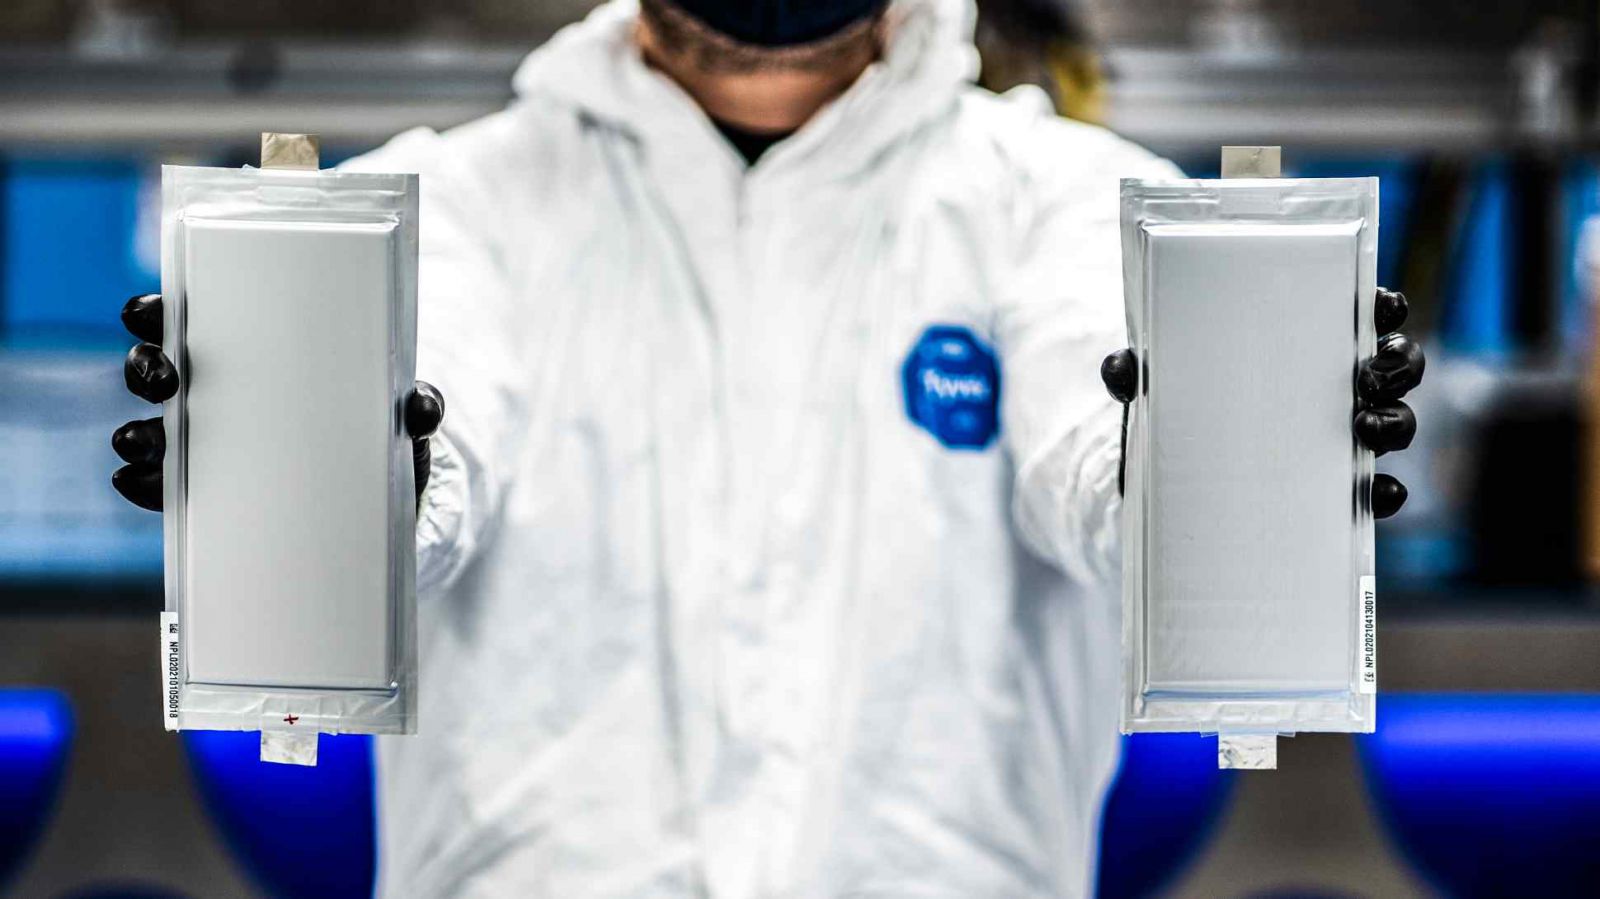 ột kỹ sư của Solid Power nắm giữ hai tế bào pin thể rắn được sản xuất cho BMW và Ford tại một dây chuyền sản xuất thử nghiệm của Hoa Kỳ vào tháng Tư. Các nhà sản xuất ô tô toàn cầu đang đặt cược vào công nghệ pin thể rắn